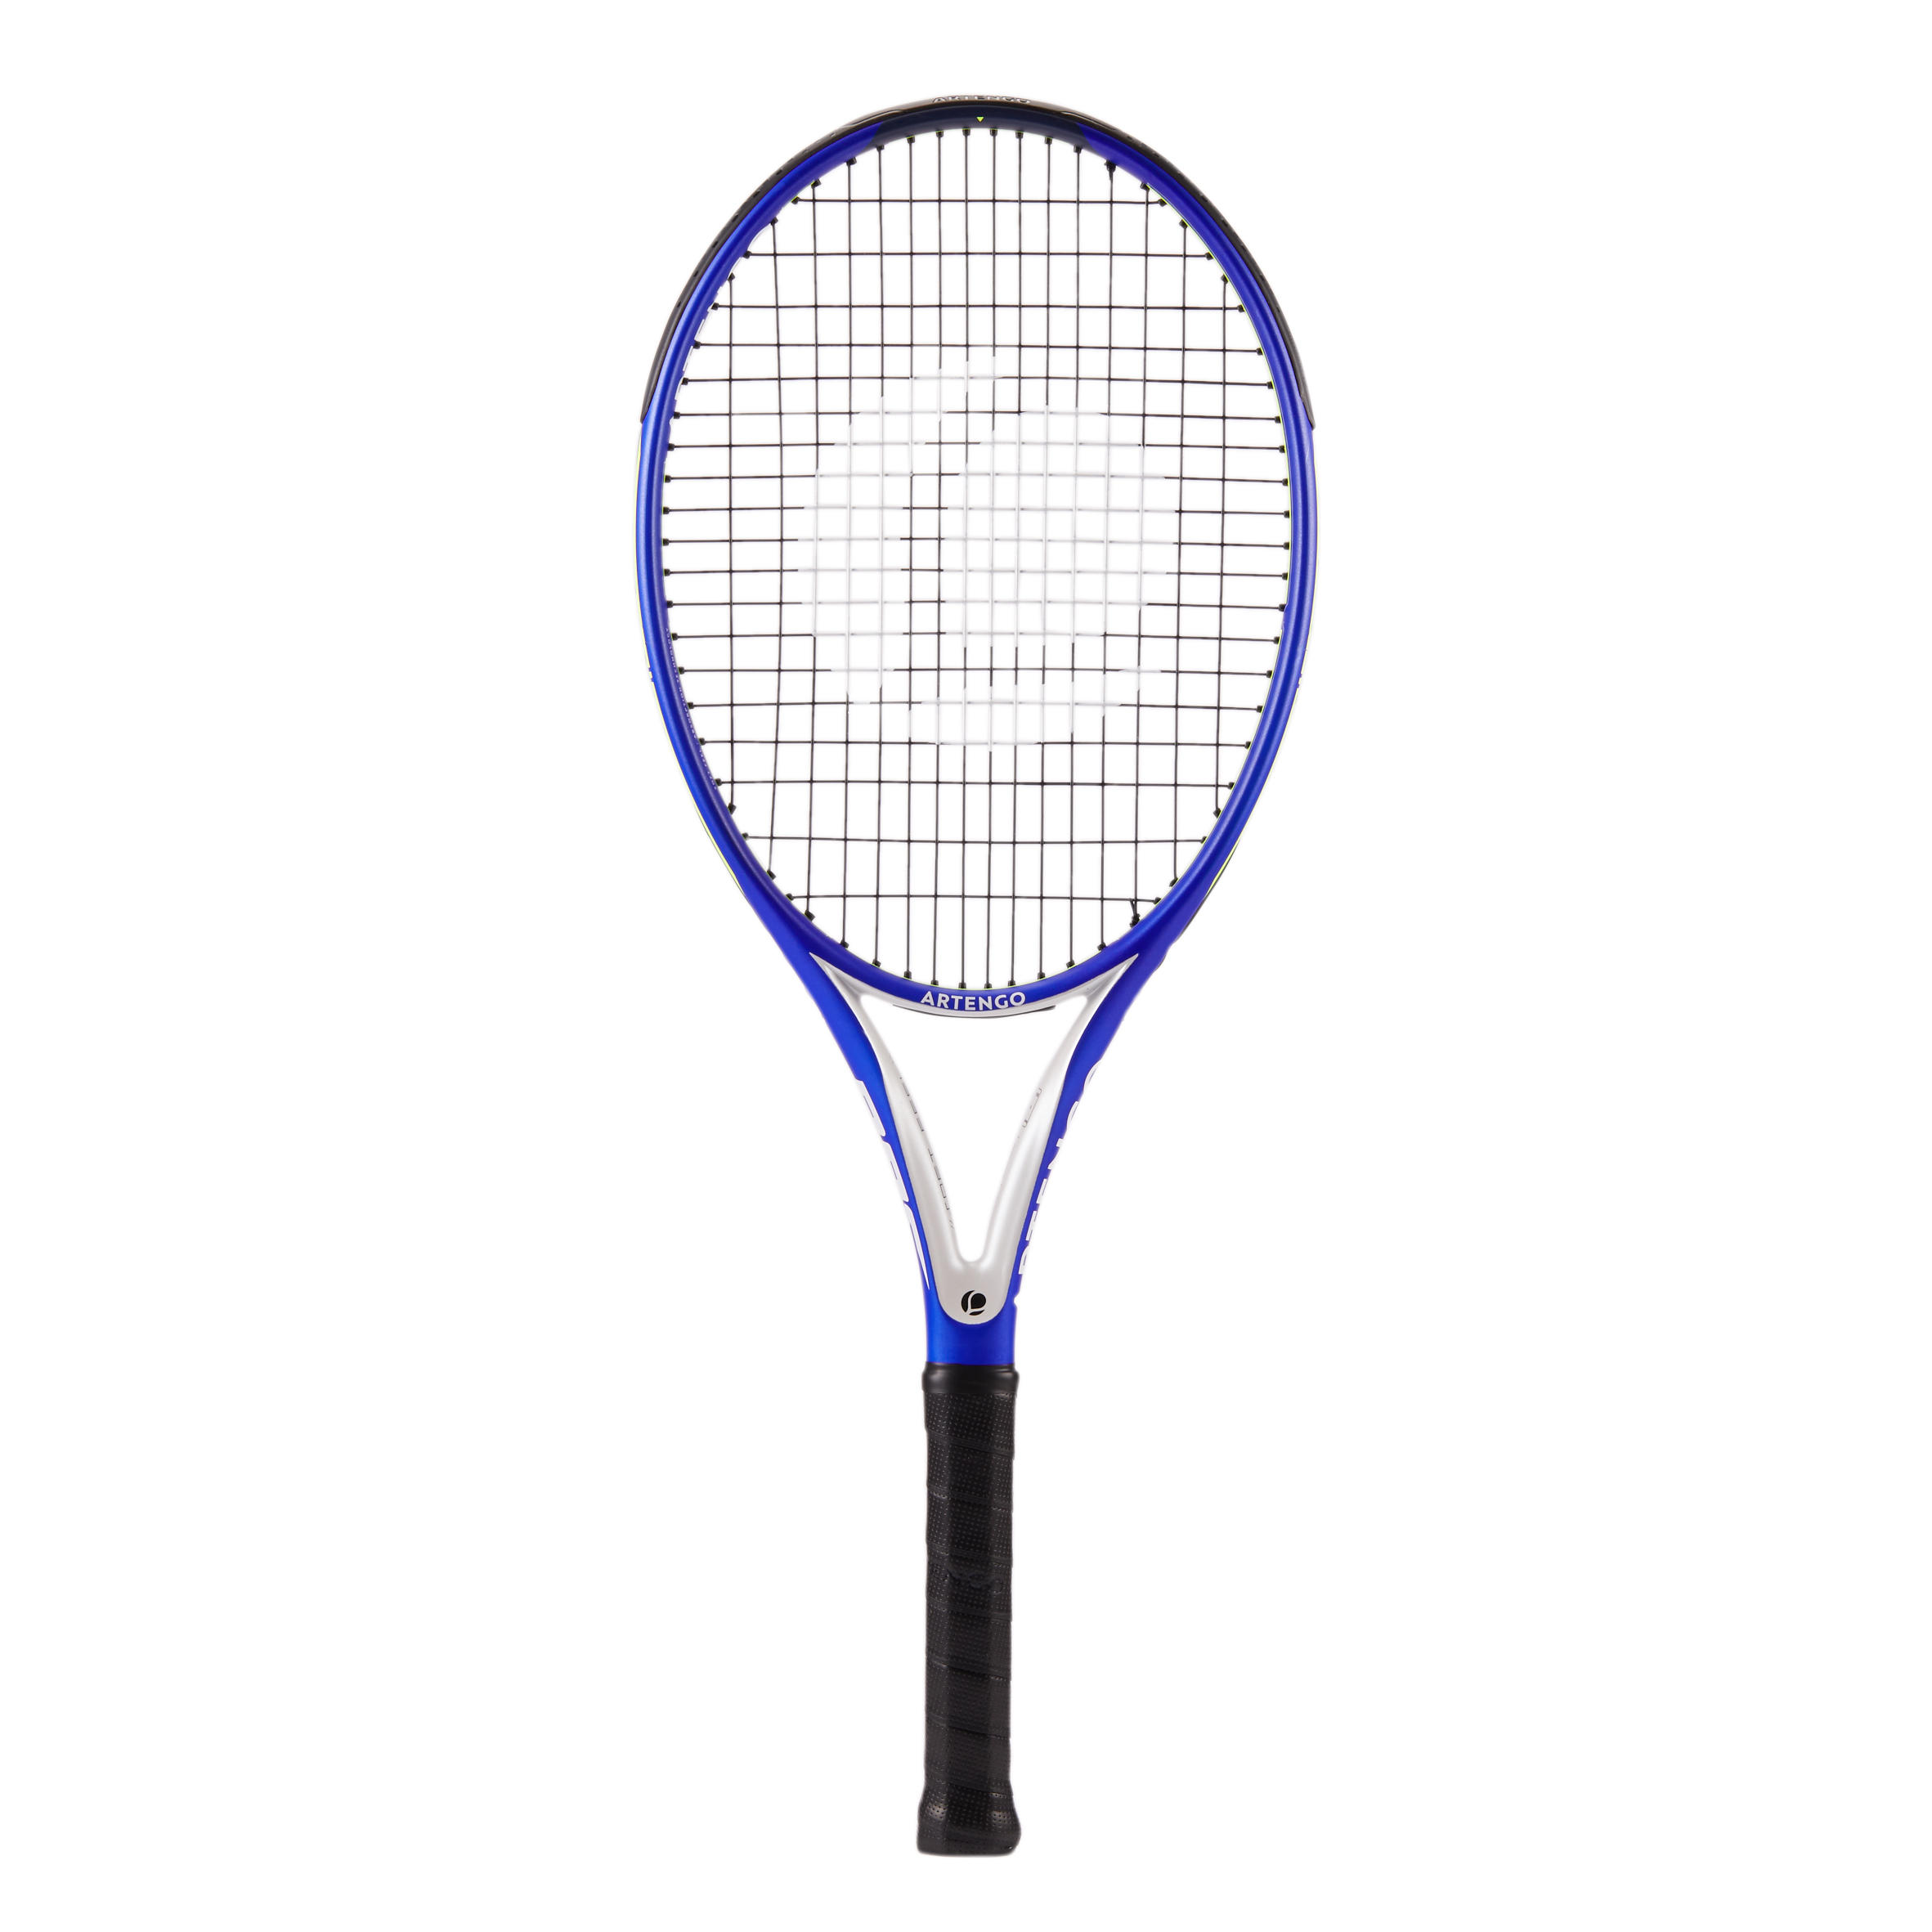 Tennis racket : Buy Tennis racket 